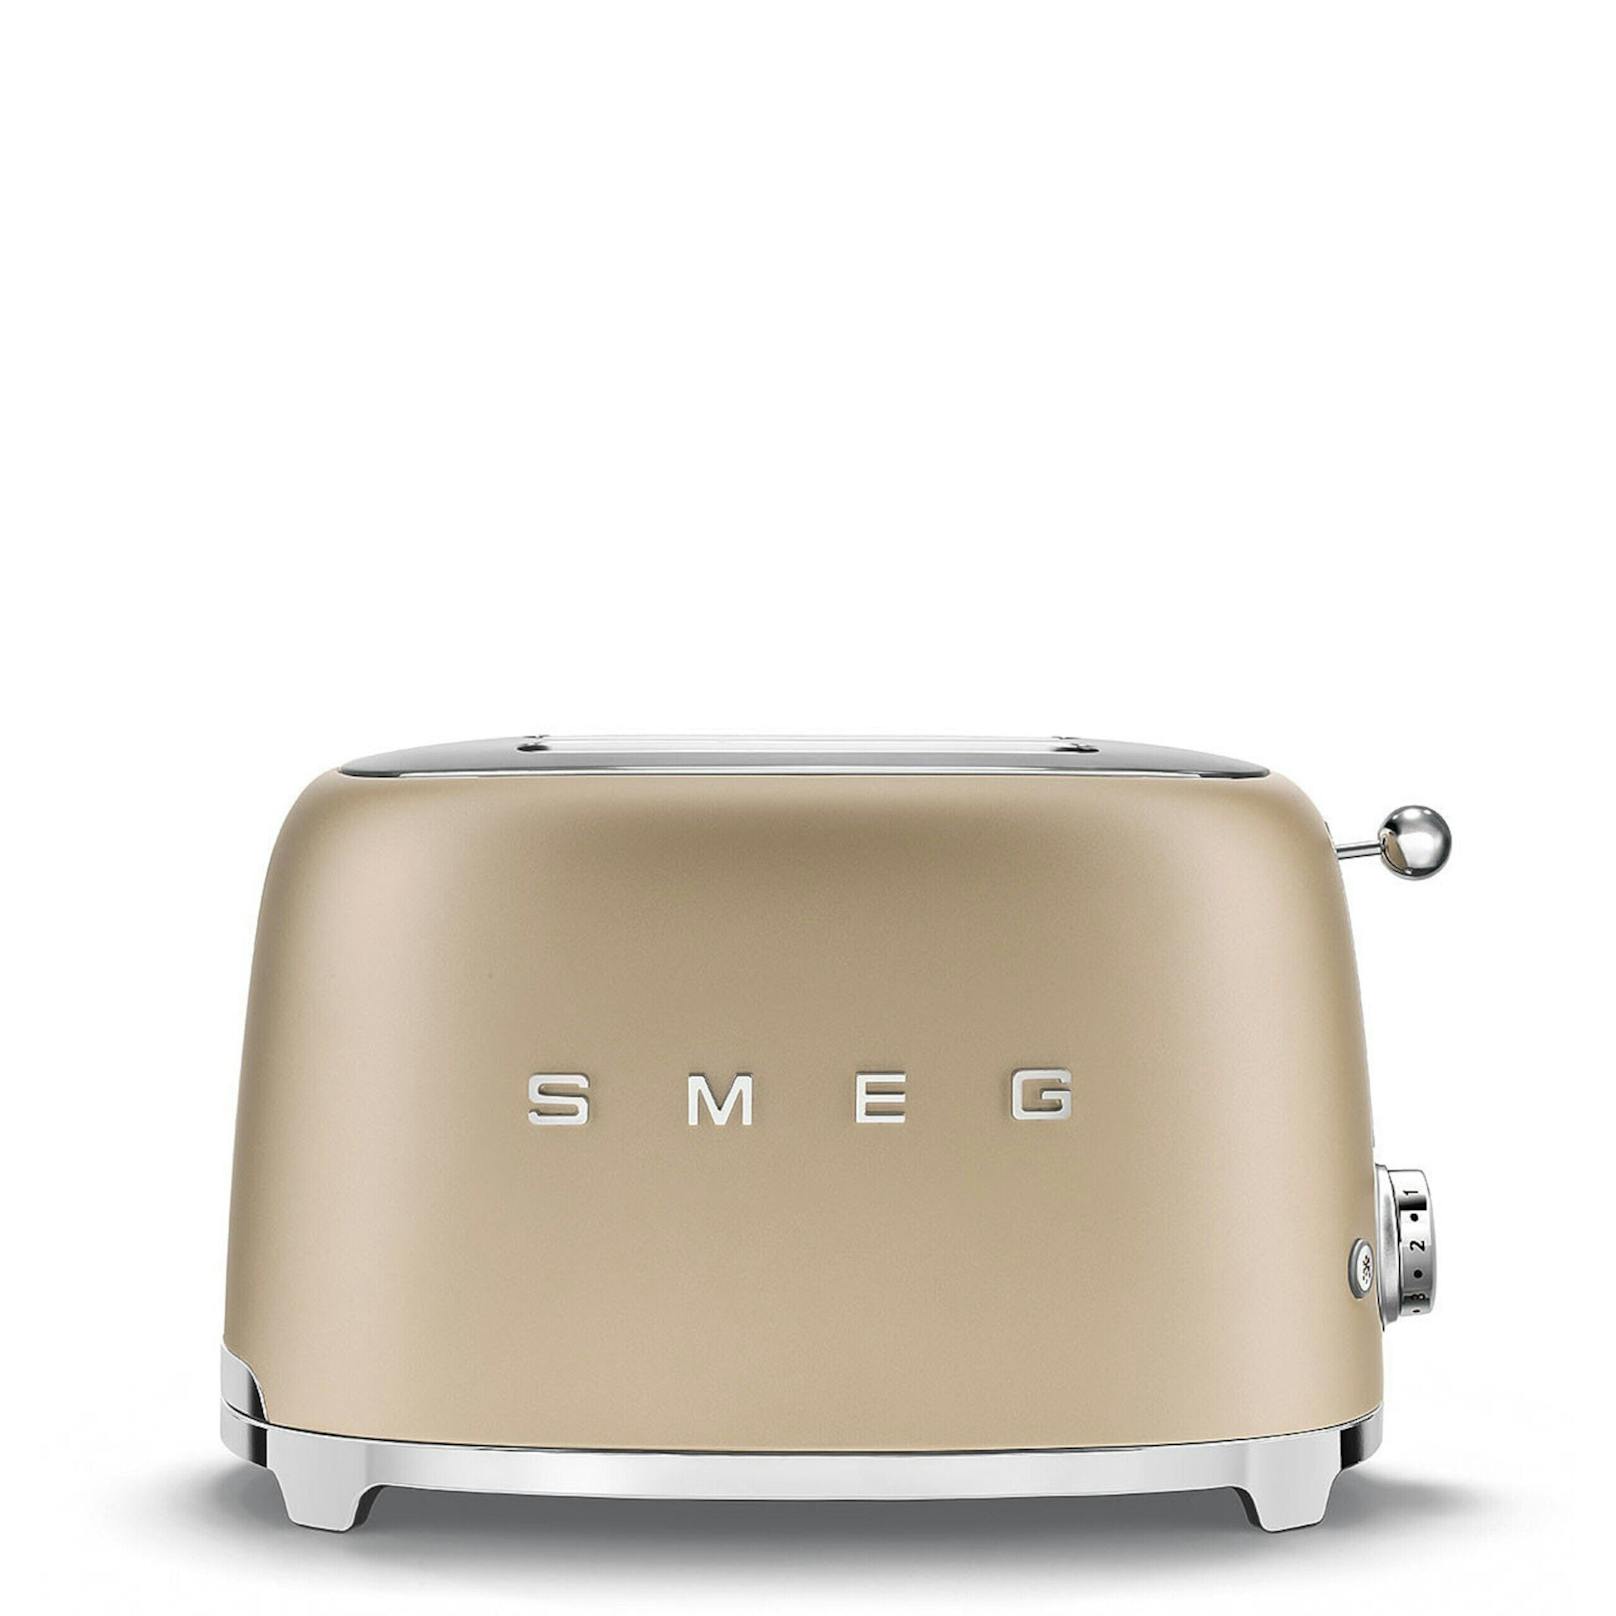 Retro-Toaster von SMEG um 149 Euro.